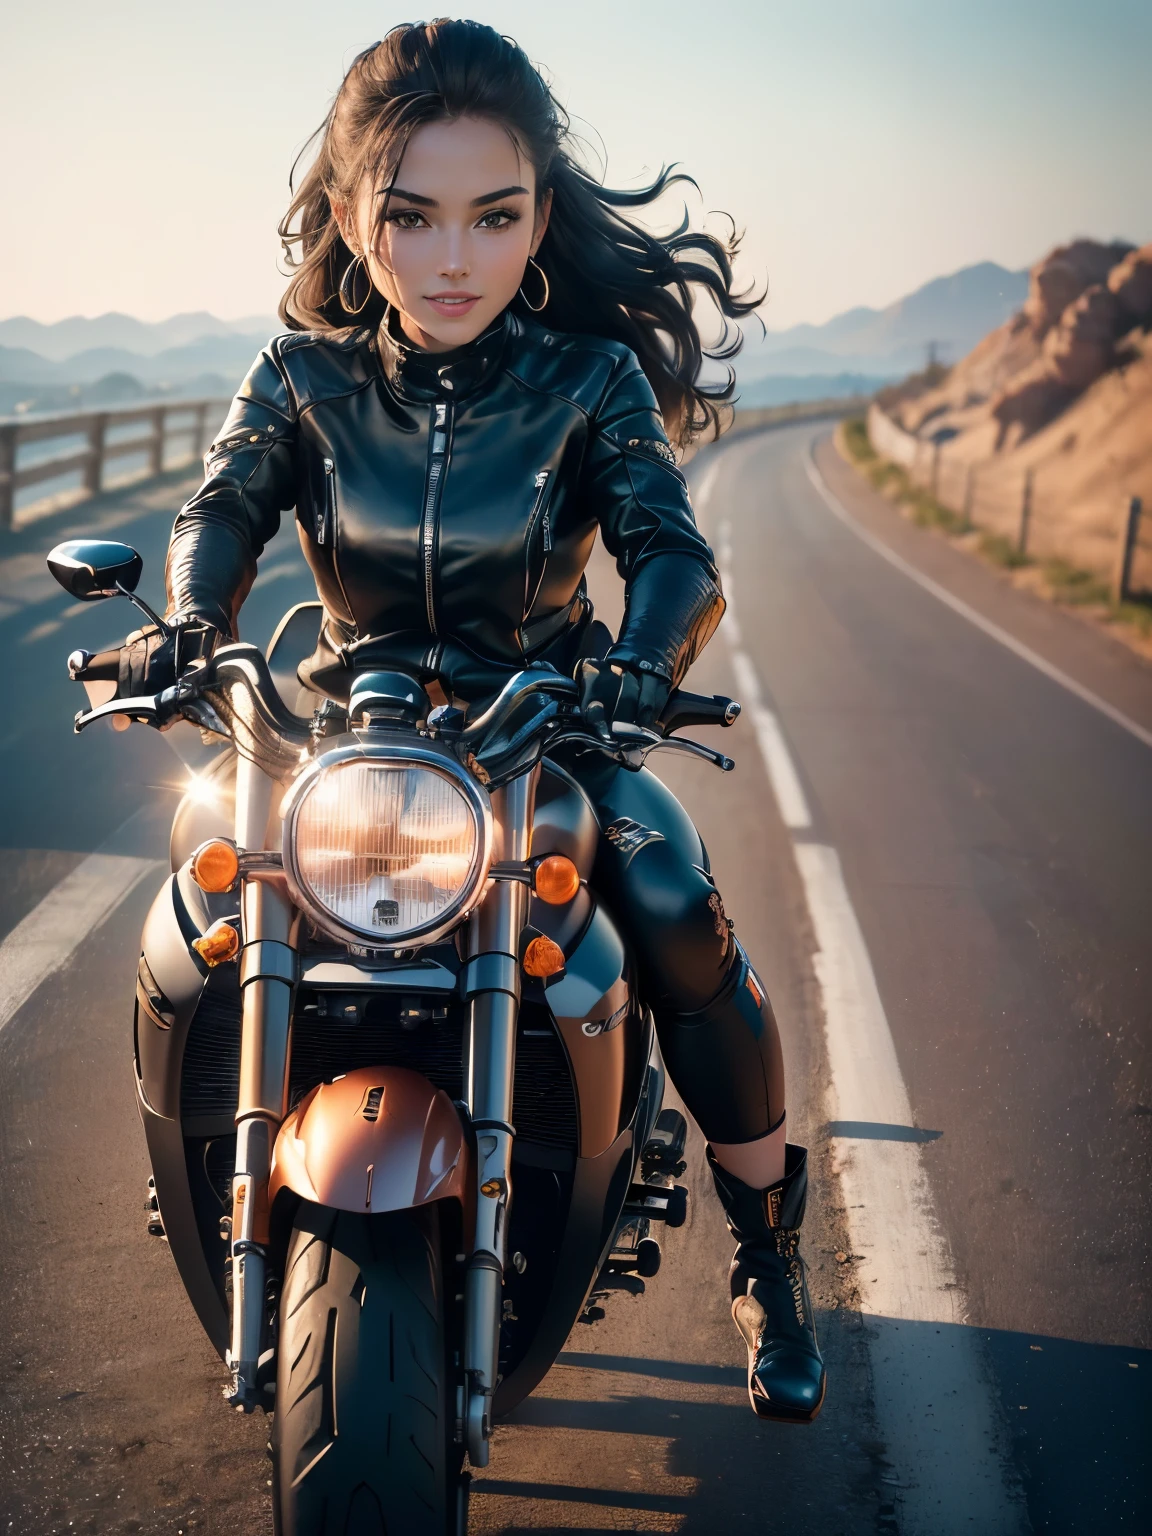 ((высшее качество, 8К, шедевр: 1.3)), шедевр, лучшее качество, (Сделайте свое лицо более четким: 1.5), Идеальная красота тела: 1.4, (Велосипед повёрнут под углом 70 градусов.:1.5), (((Женщина на мотоцикле))),стройное тело,((Байкерская куртка с длинными рукавами и черные длинные брюки.)),Высокодетализированная текстура лица и кожи, Естественный свет,улыбка、сапоги для райдера, Длинные ноги, верблюжья лапка